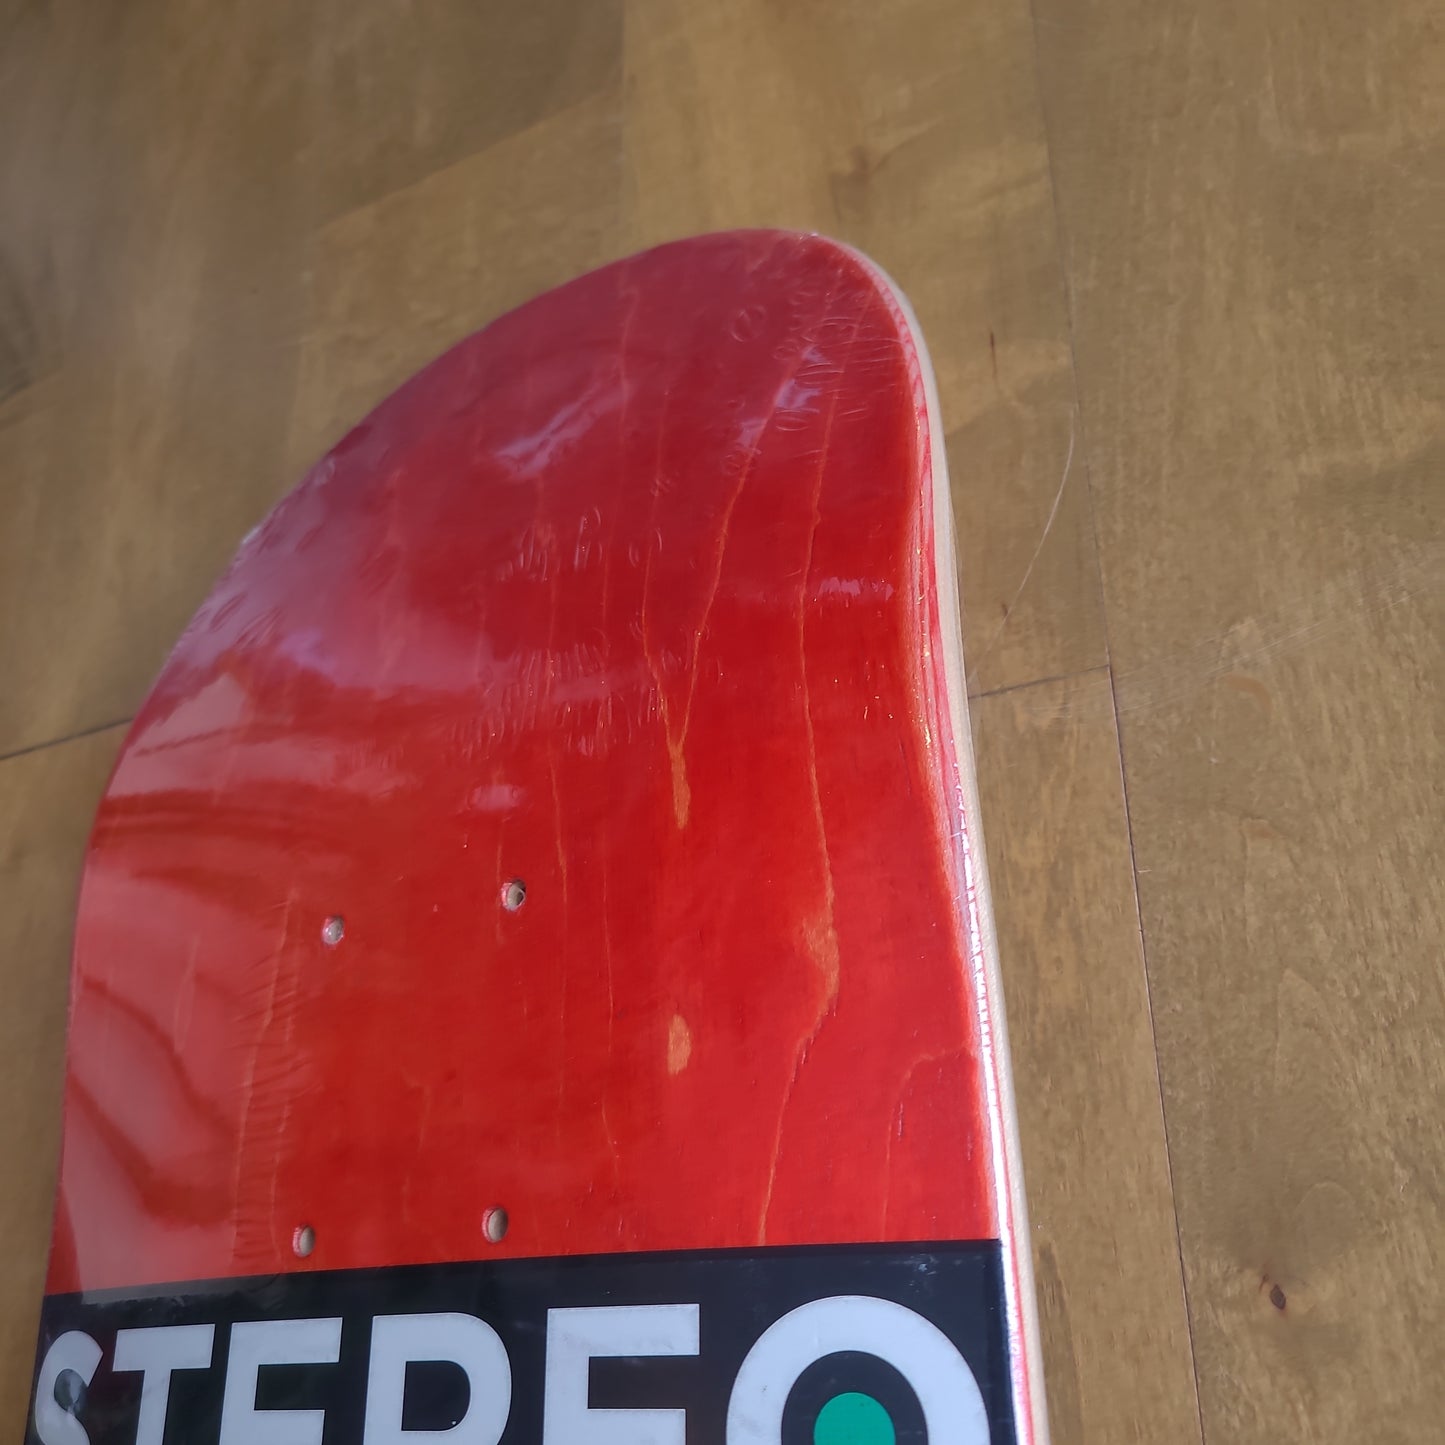 Stereo - Bryce Wettstein Retro 8.0" Deck